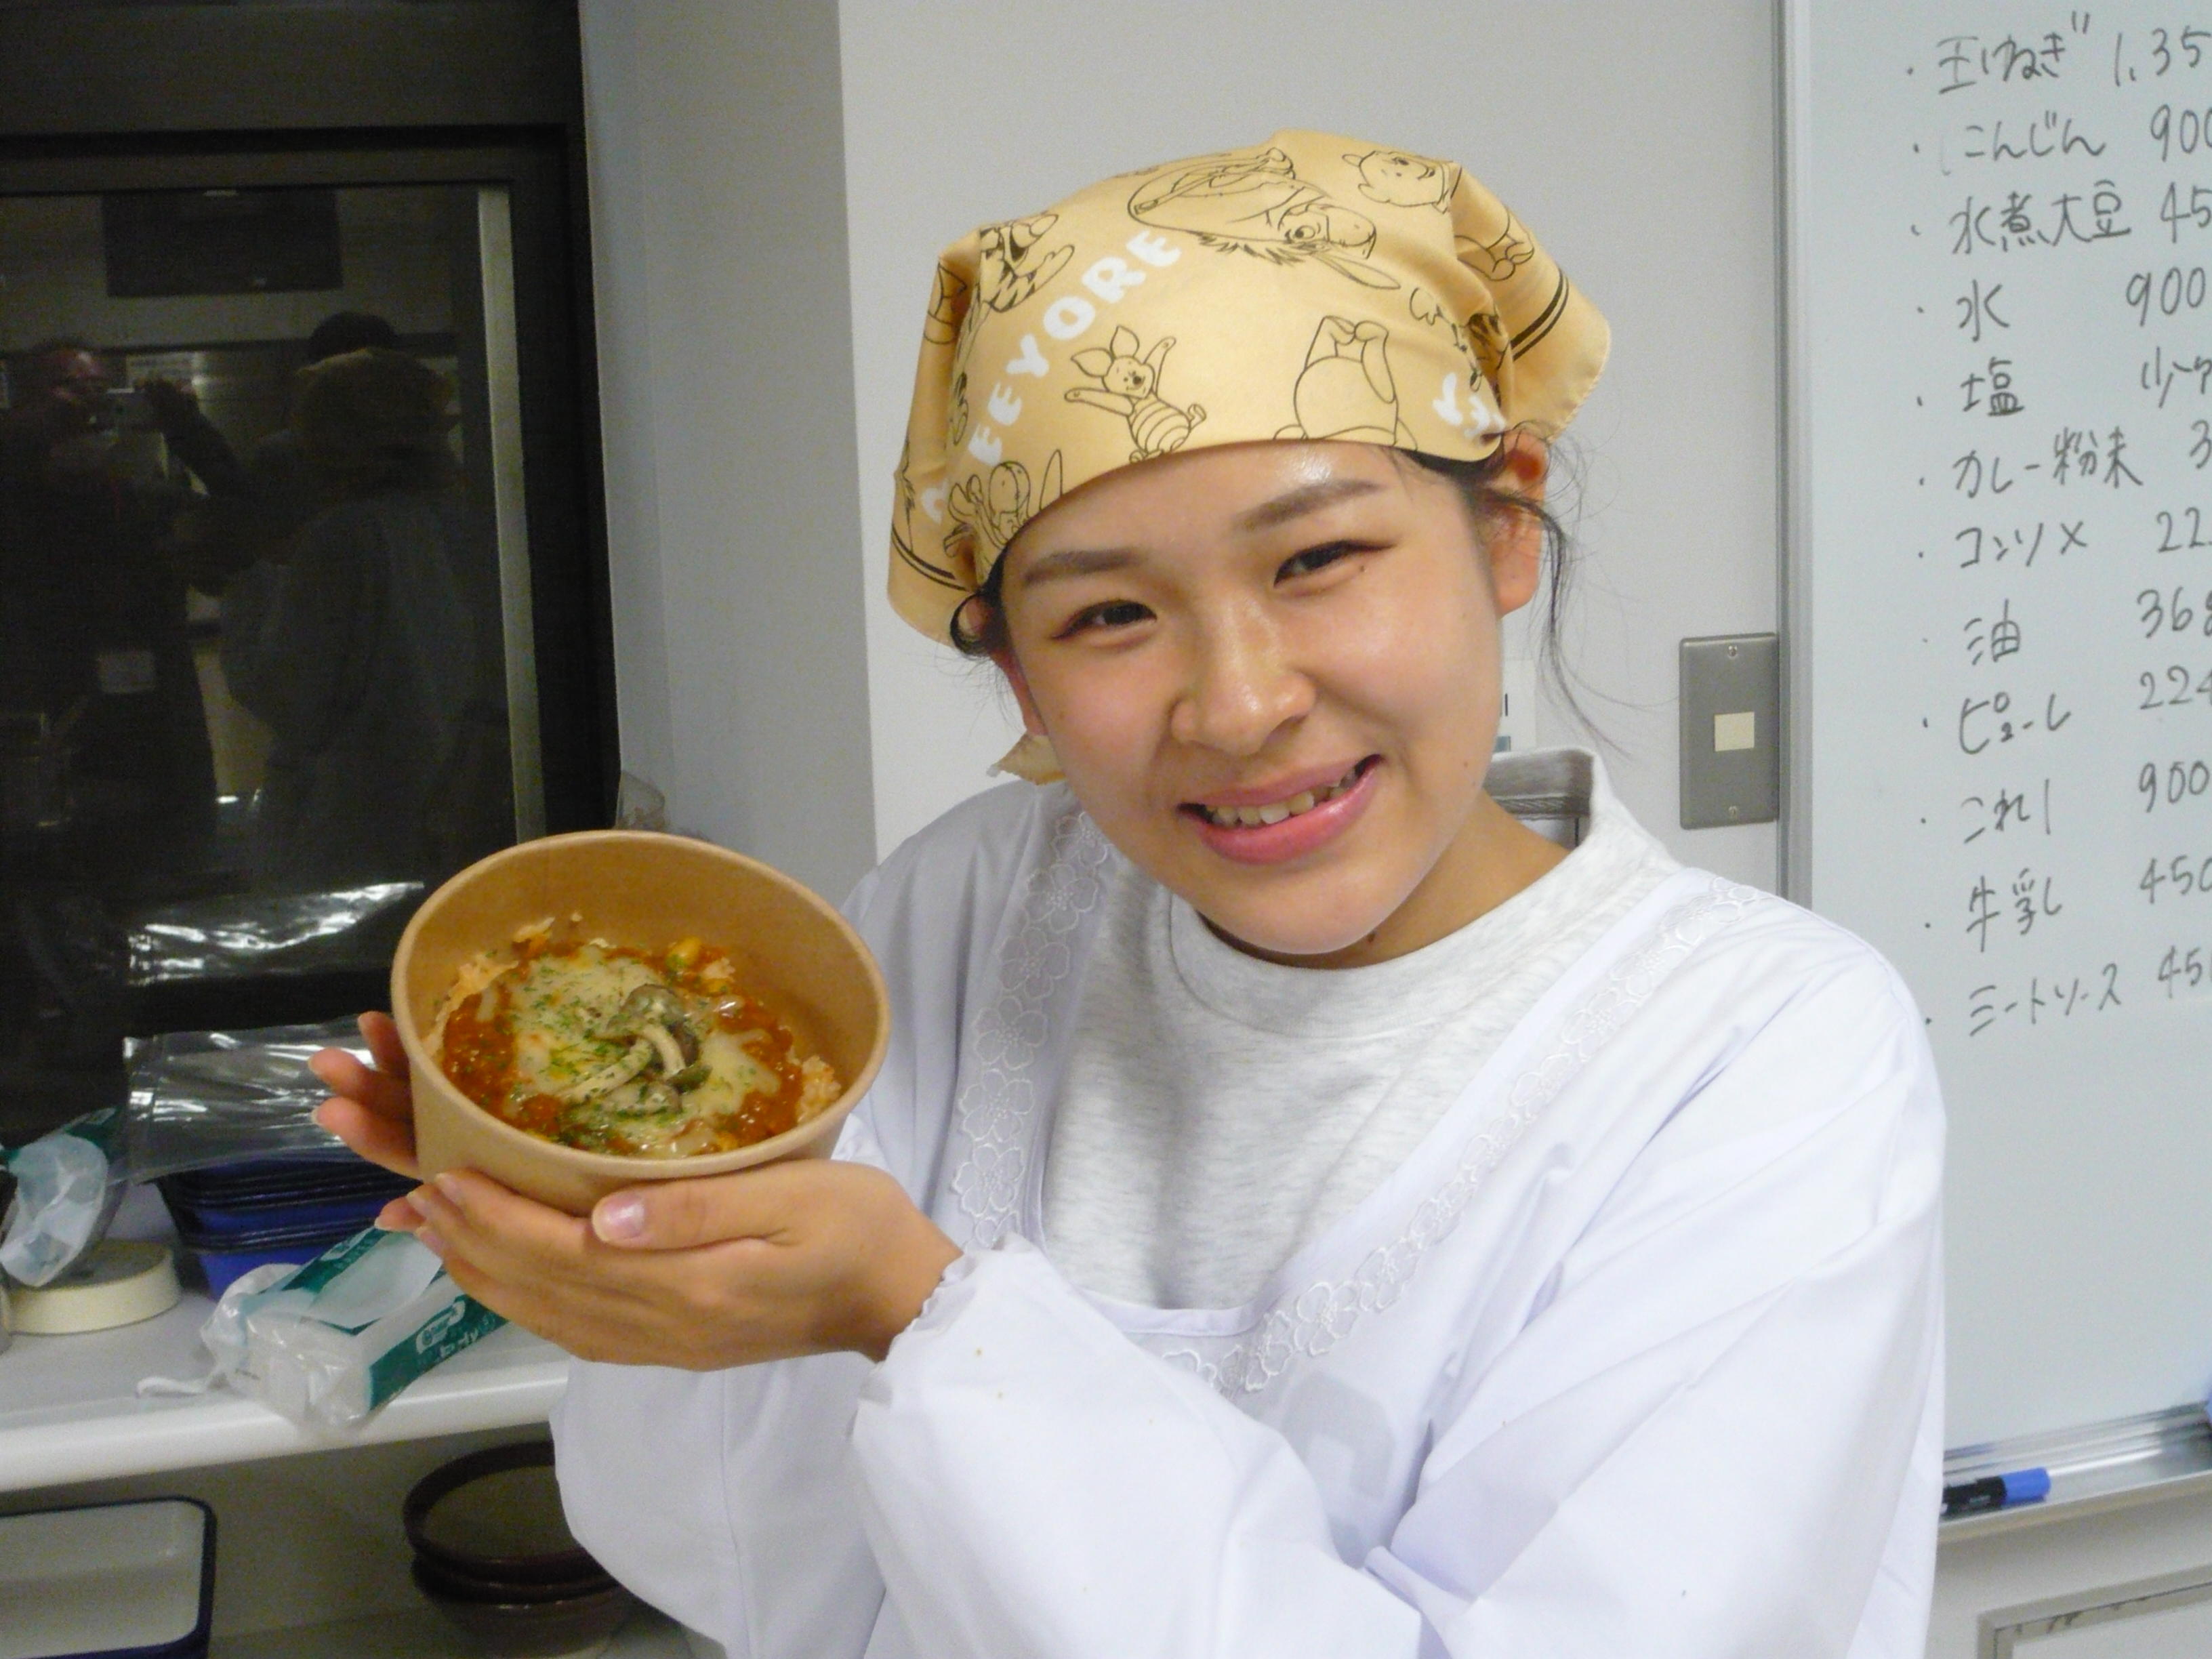 大阪国際大学の学生らが11月6日の「大枝公園スマイルデー『もりっしゅ』」でカゴメとのコラボメニュー・野菜たっぷり「ニコニコカレー」を販売 -- 30秒で野菜摂取量を推定できるベジチェック(R)体験も